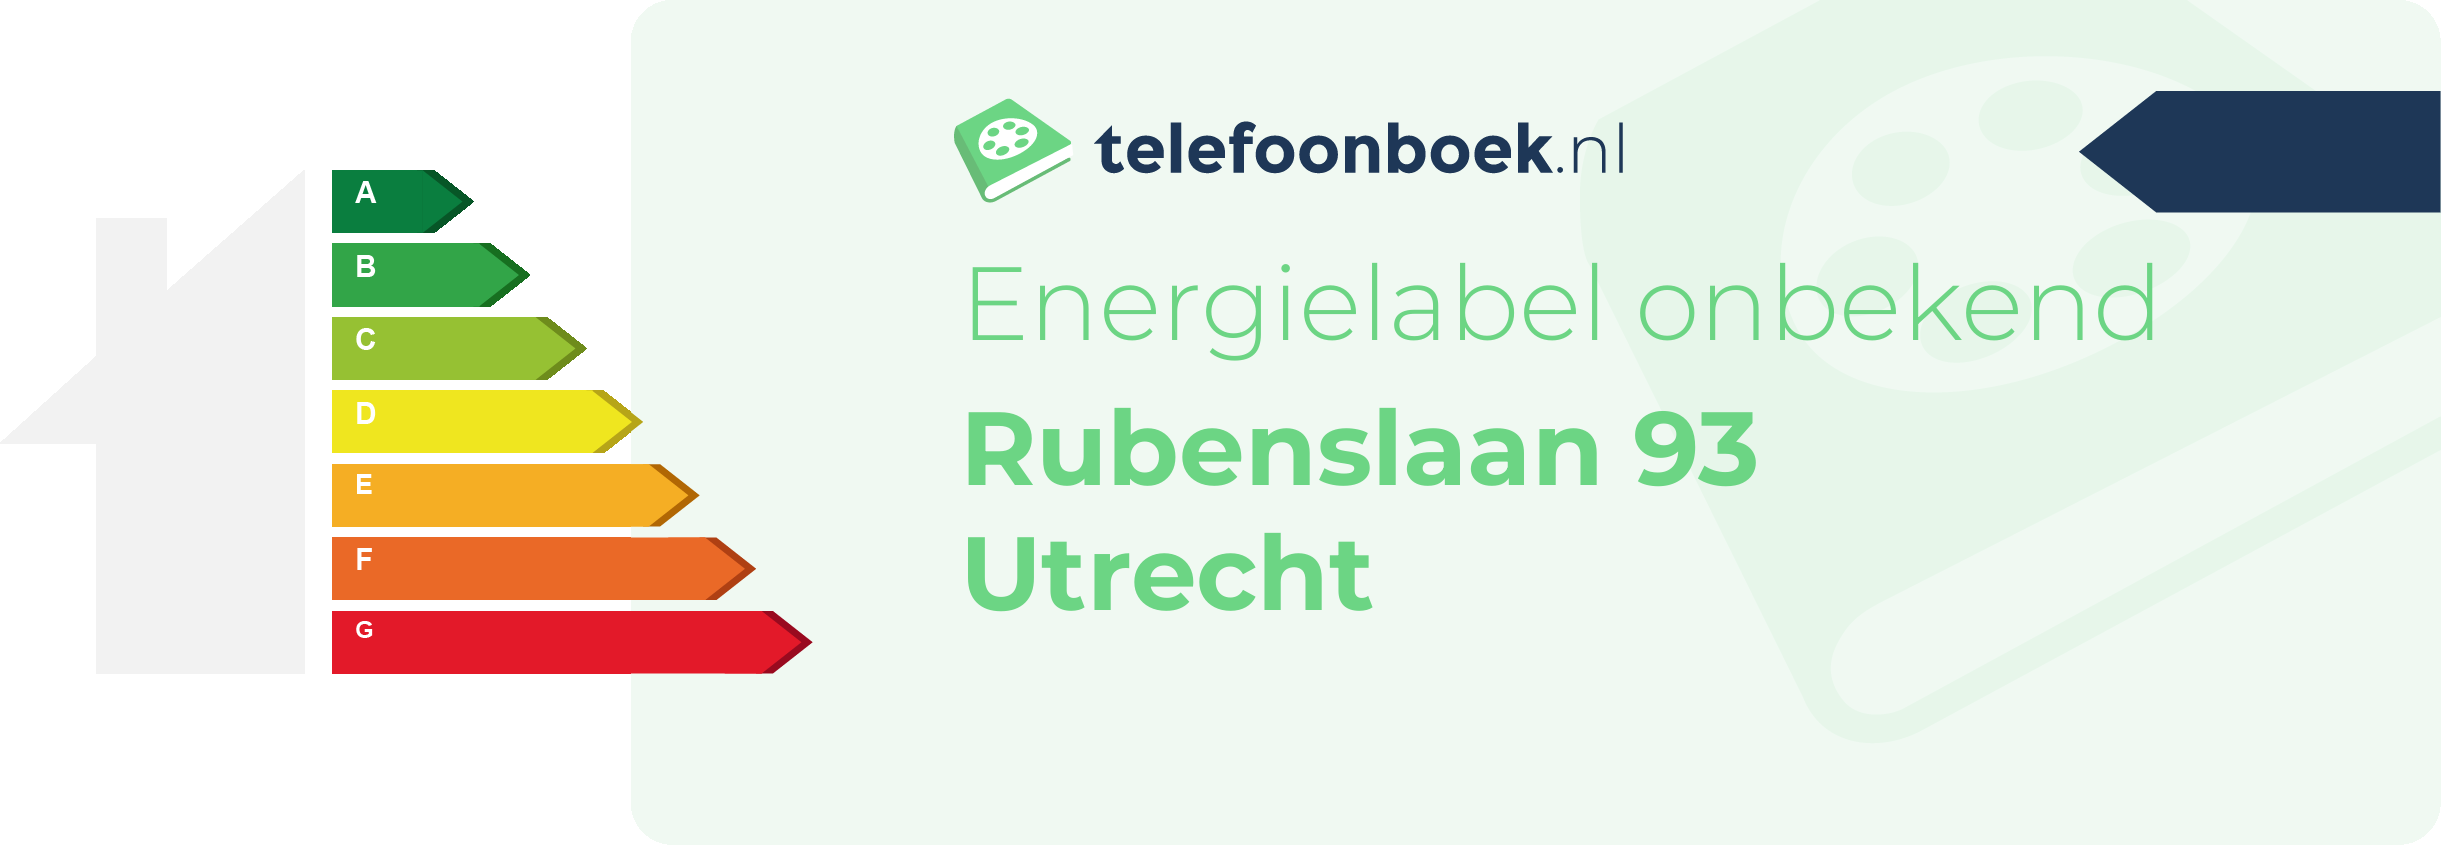 Energielabel Rubenslaan 93 Utrecht